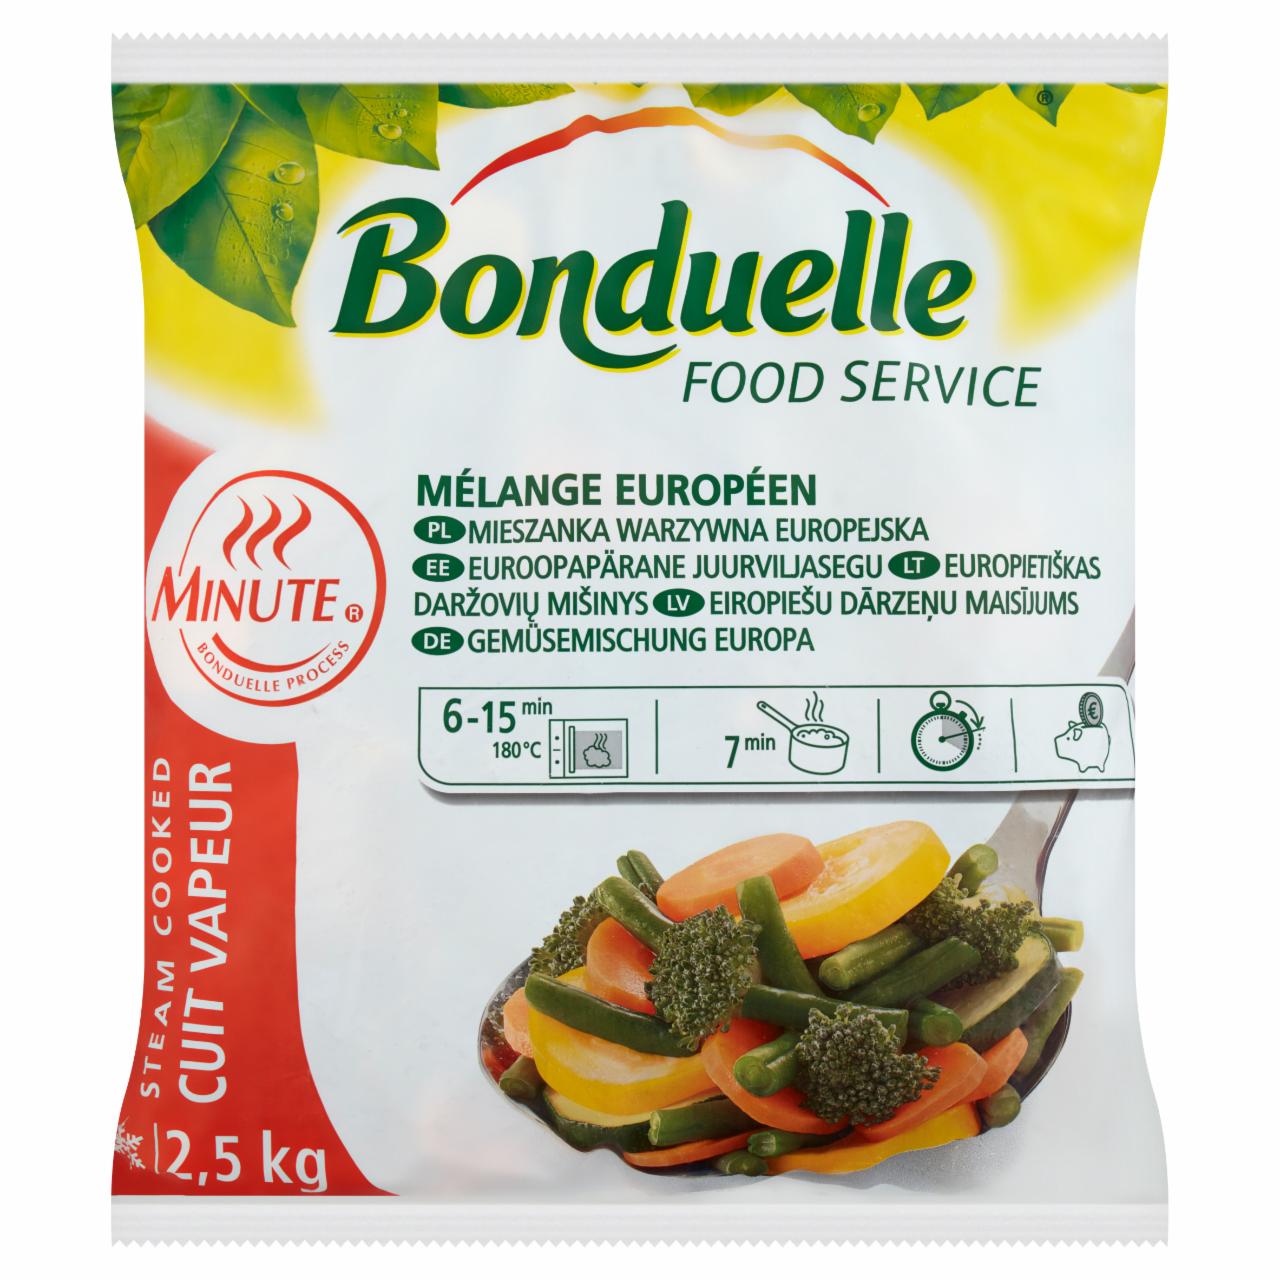 Képek - Bonduelle European Mix gyorsfagyasztott zöldségkeverék 2,5 kg